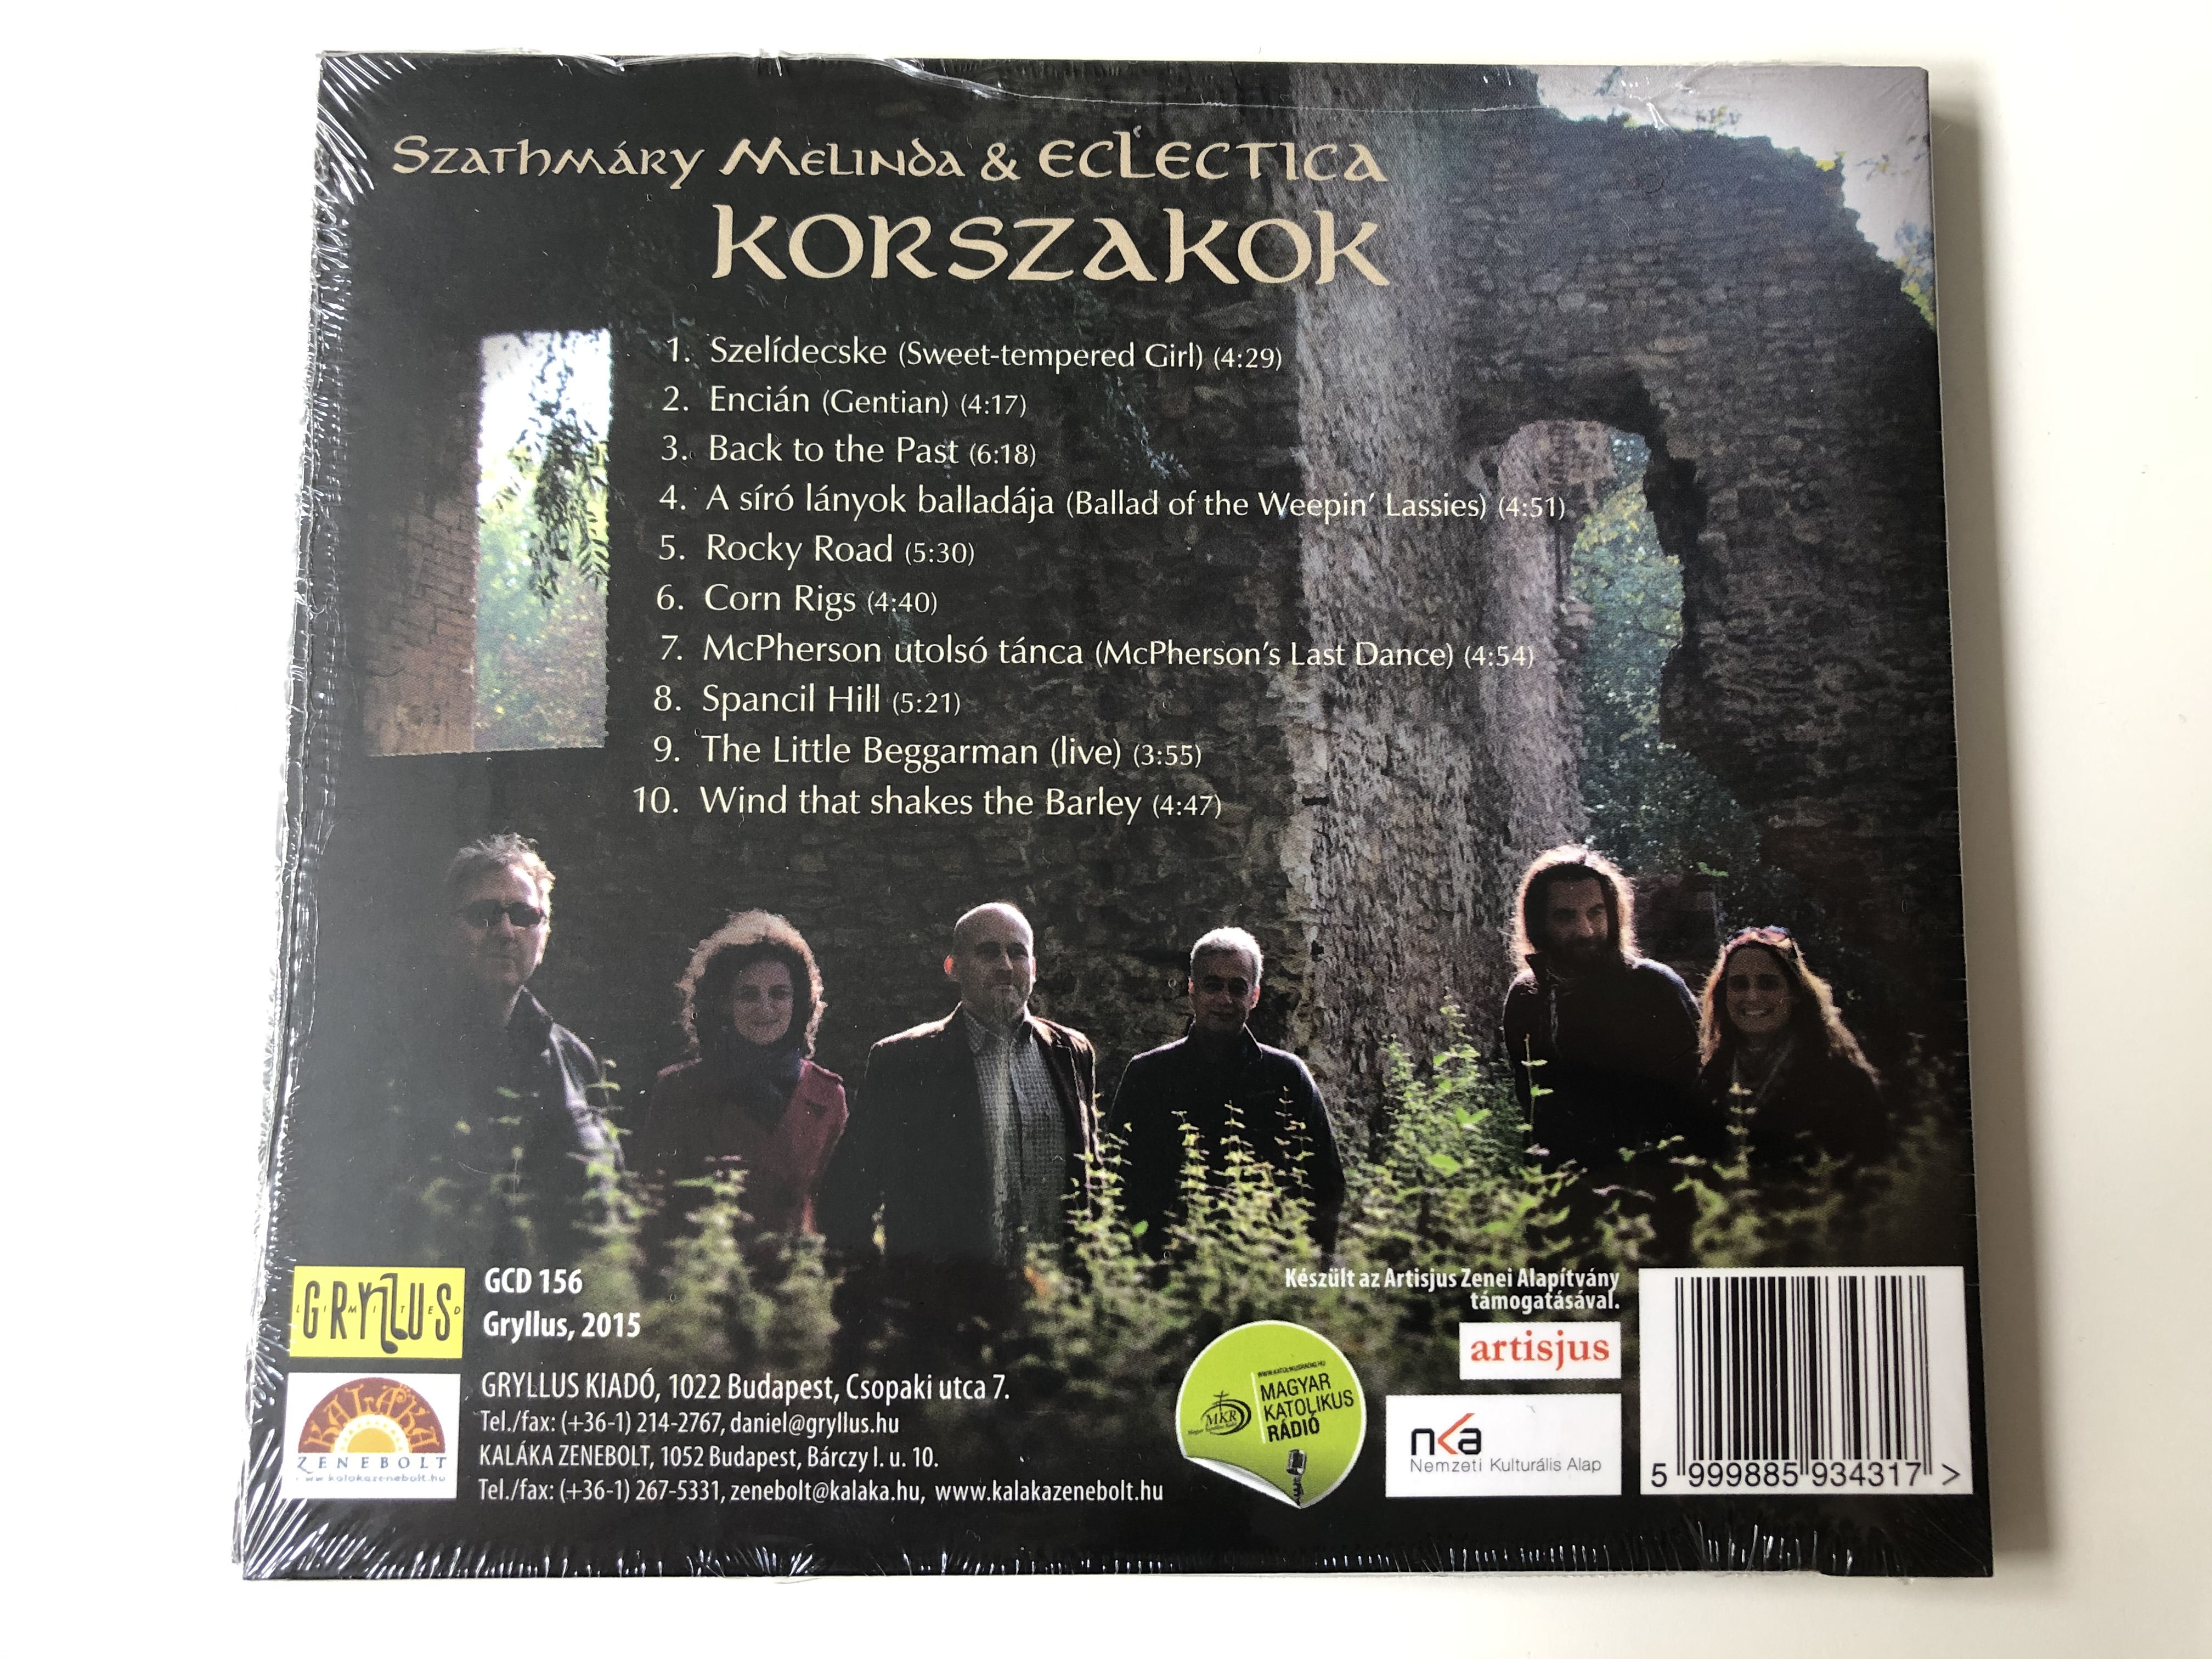 szathmary-melinda-eclectica-korszakok-gryllus-kiado-audio-cd-2015-gcd-156-2-.jpg